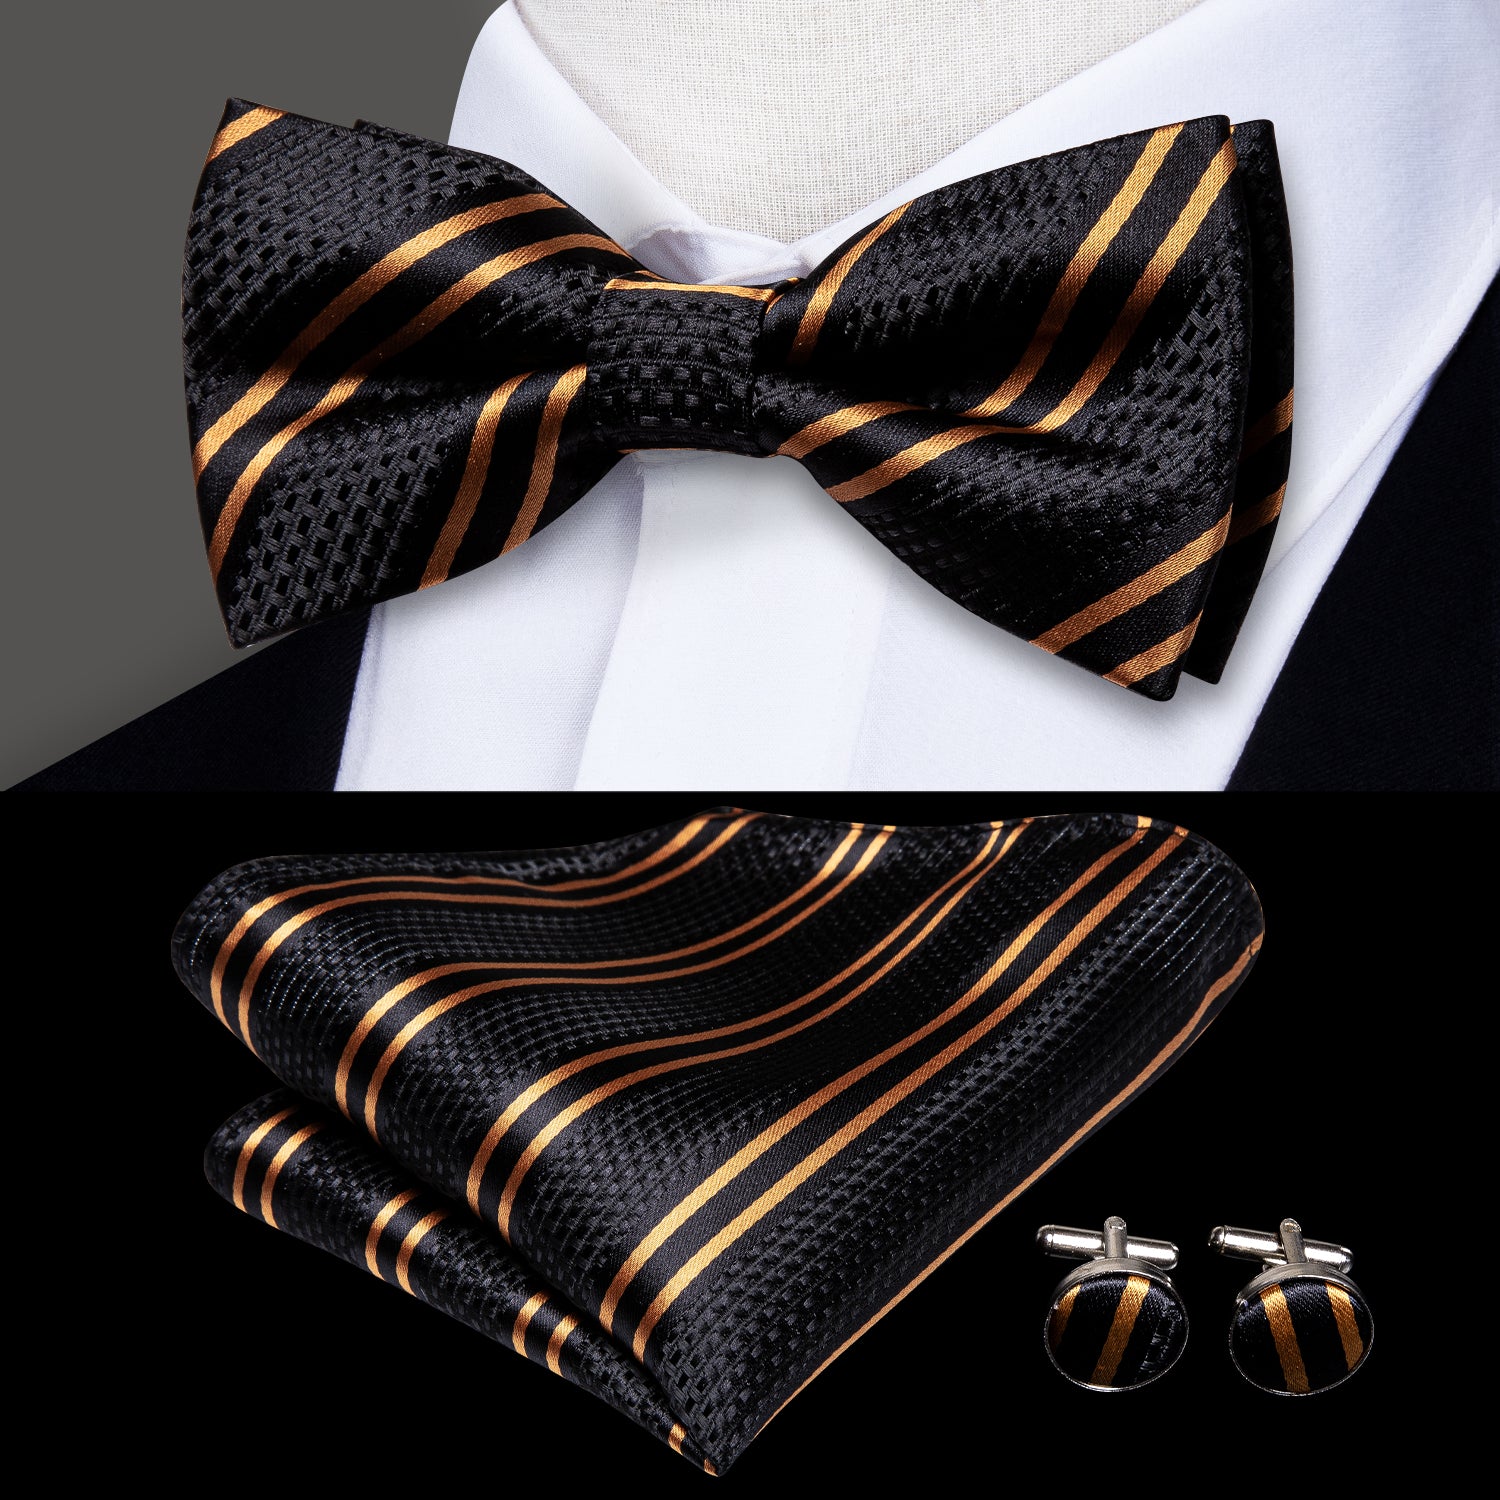 Black Golden Striped Pre-tied Bow Tie Hanky Cufflinks Set